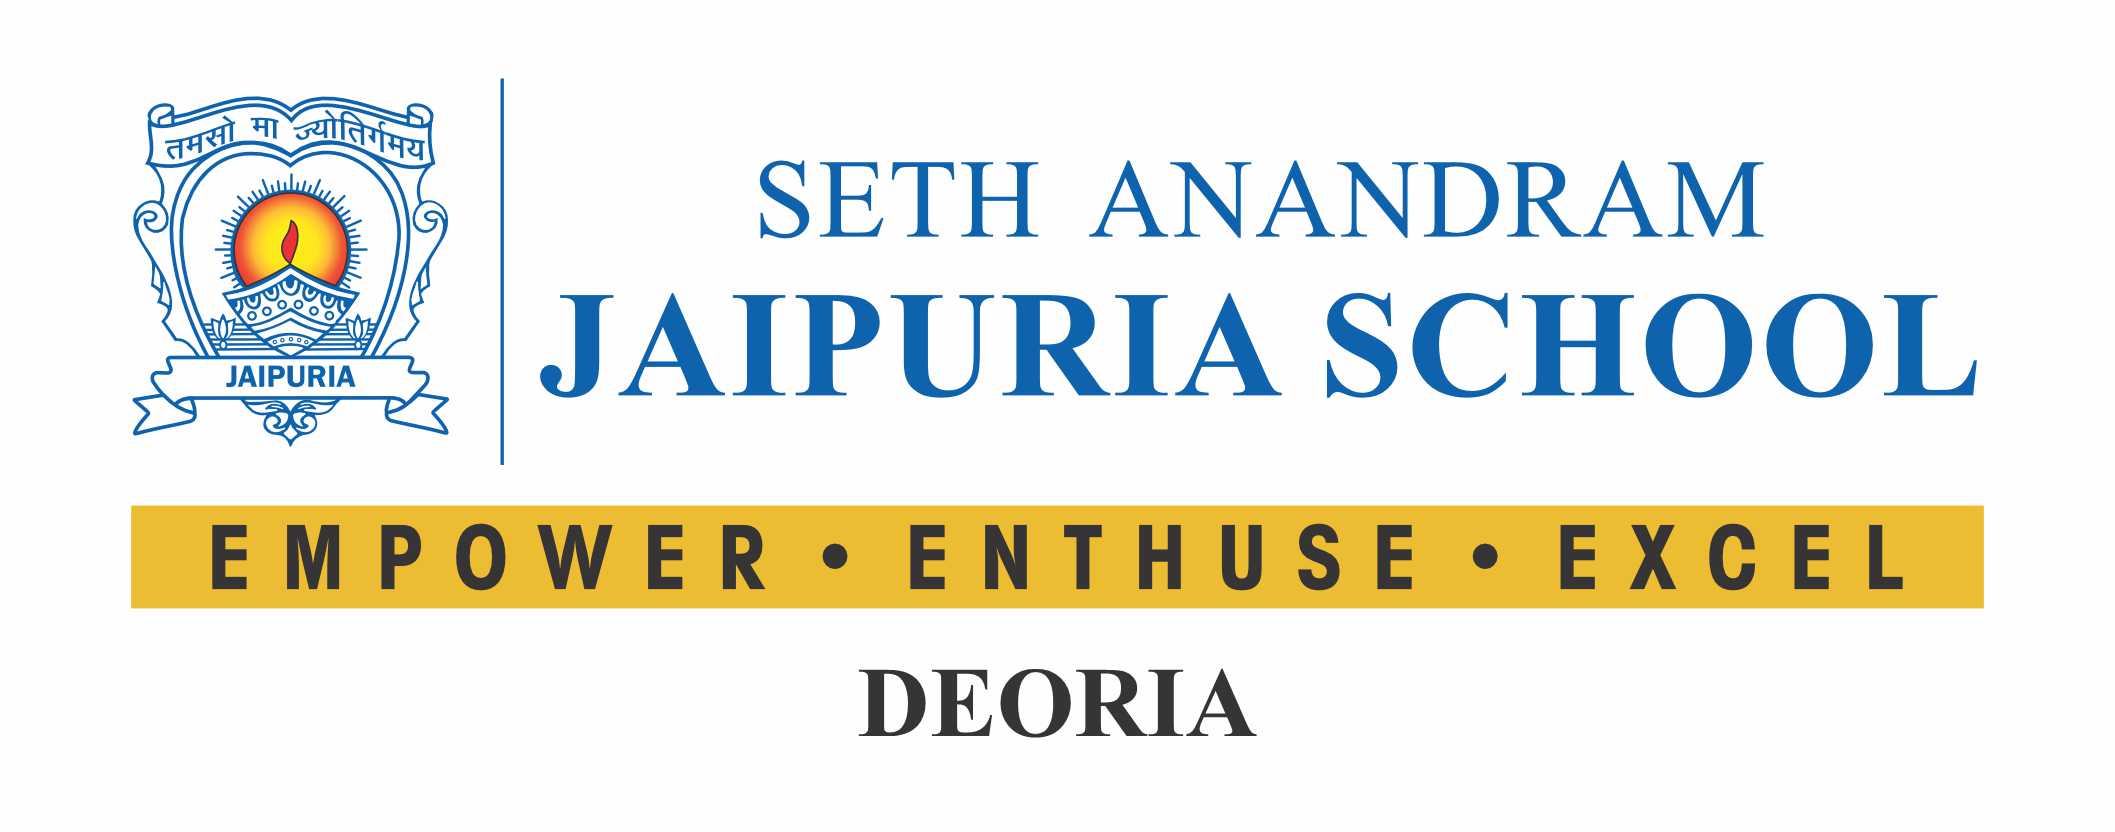 Seth Anandram Jaipuria School – Deoria , Best School in Deoria